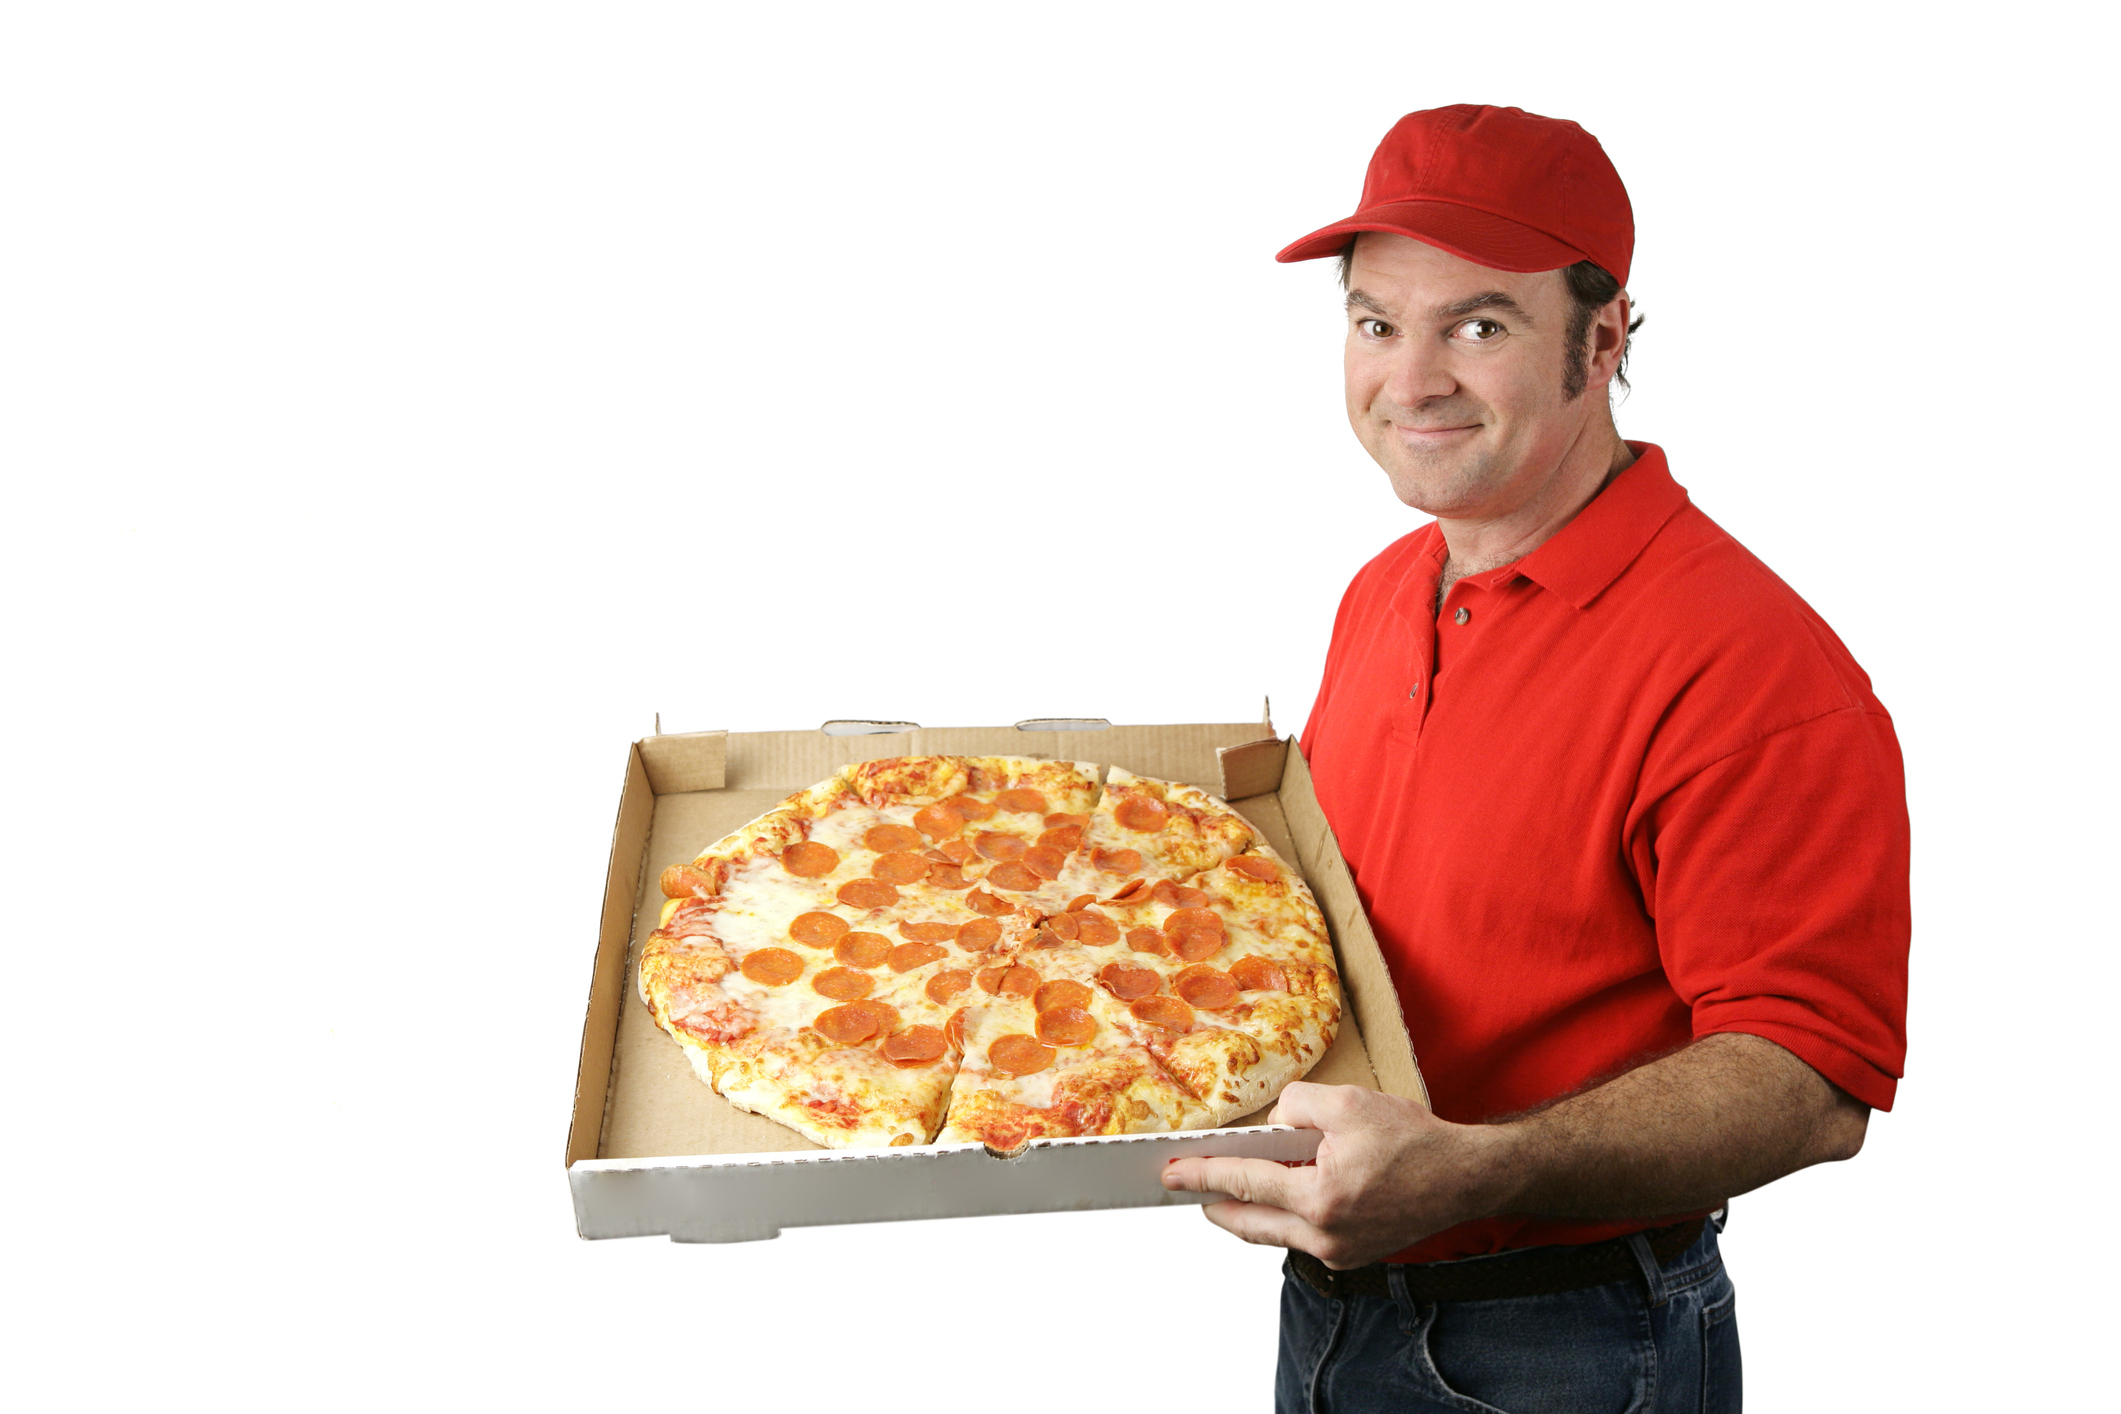 Мужчина имеет жену на пару с разносчиком пиццы 